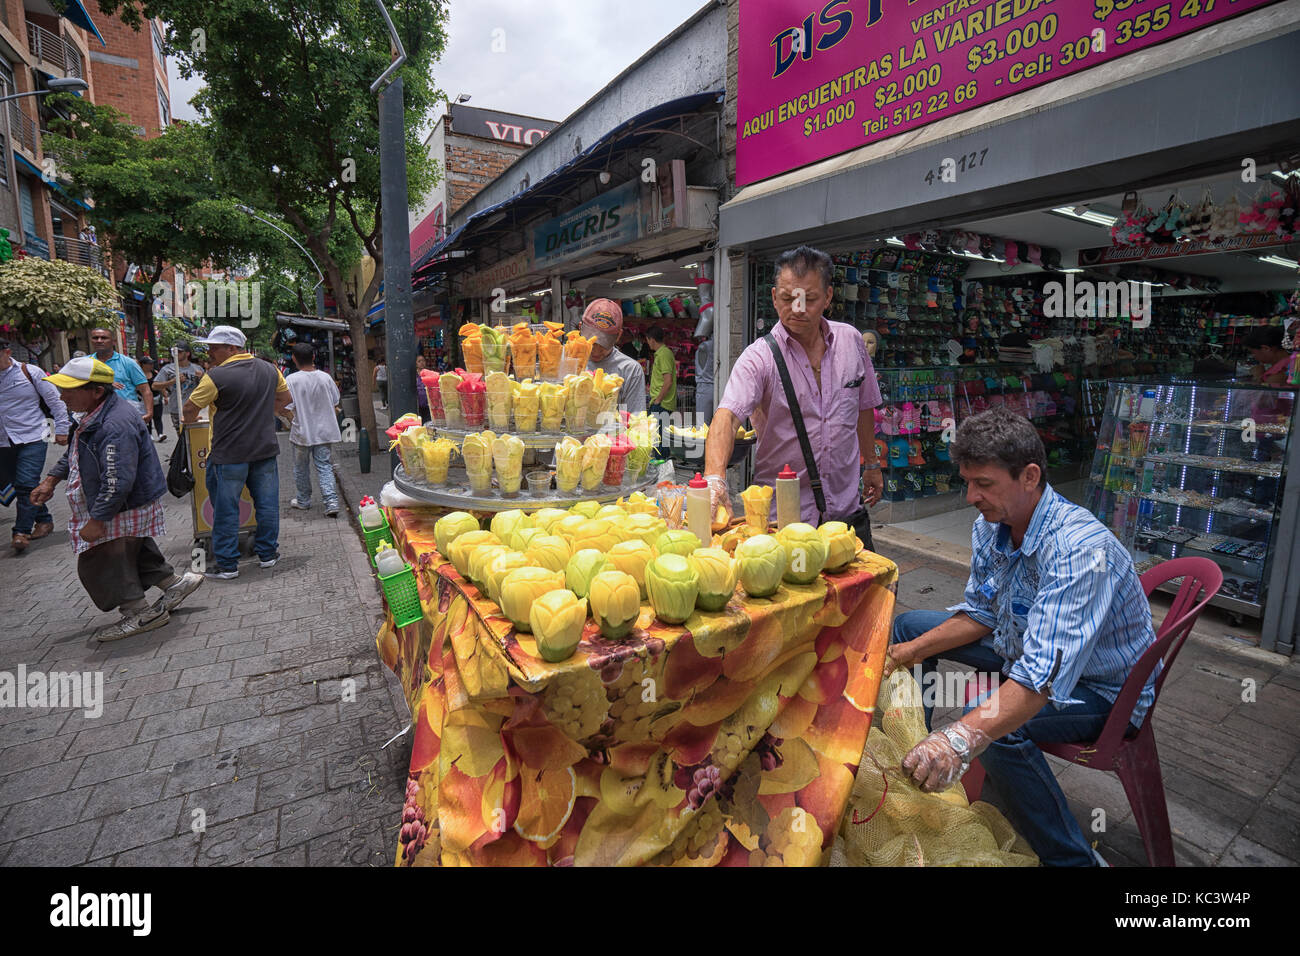 Septiembre 26, 2017 Medellín, Colombia: el proveedor vendiendo frutas frescas cortadas en cups como refrescos en el centro de la ciudad Foto de stock